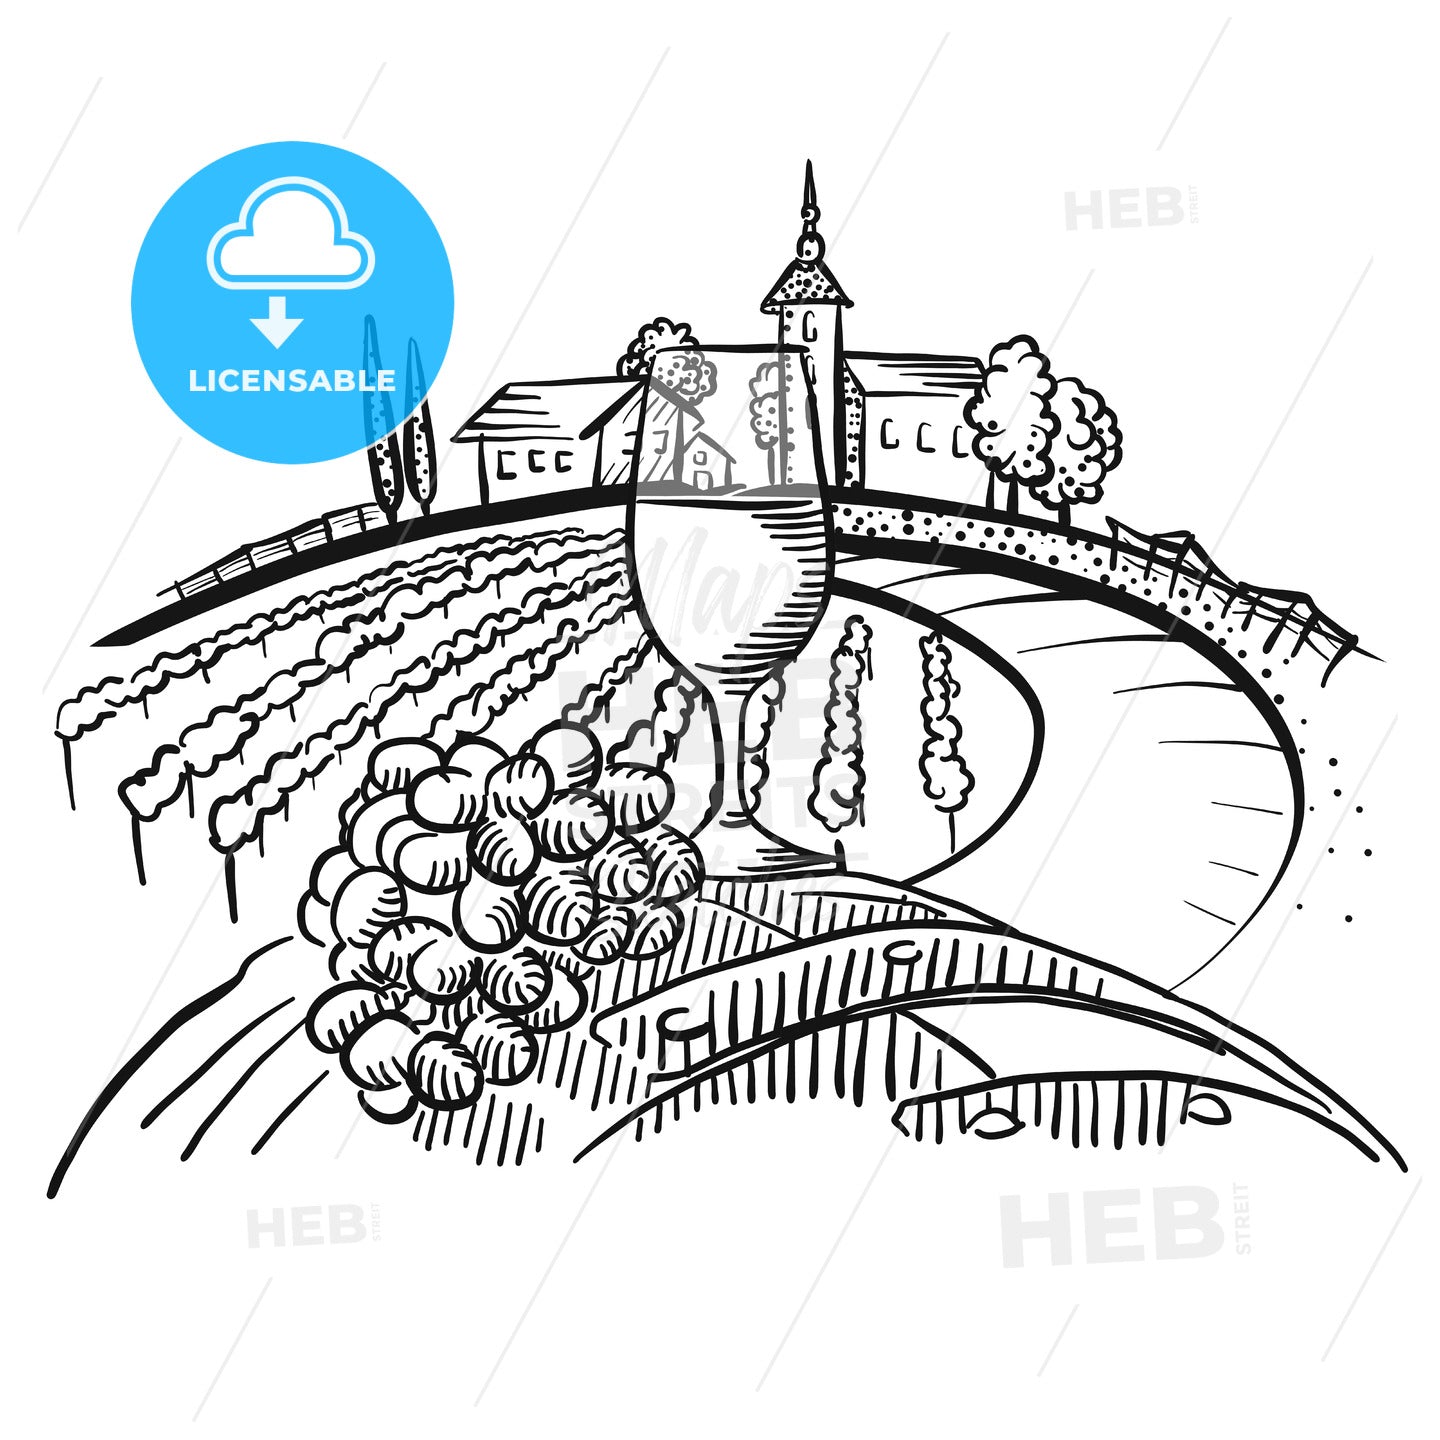 Wine on barrel and vineyard landscape – instant download